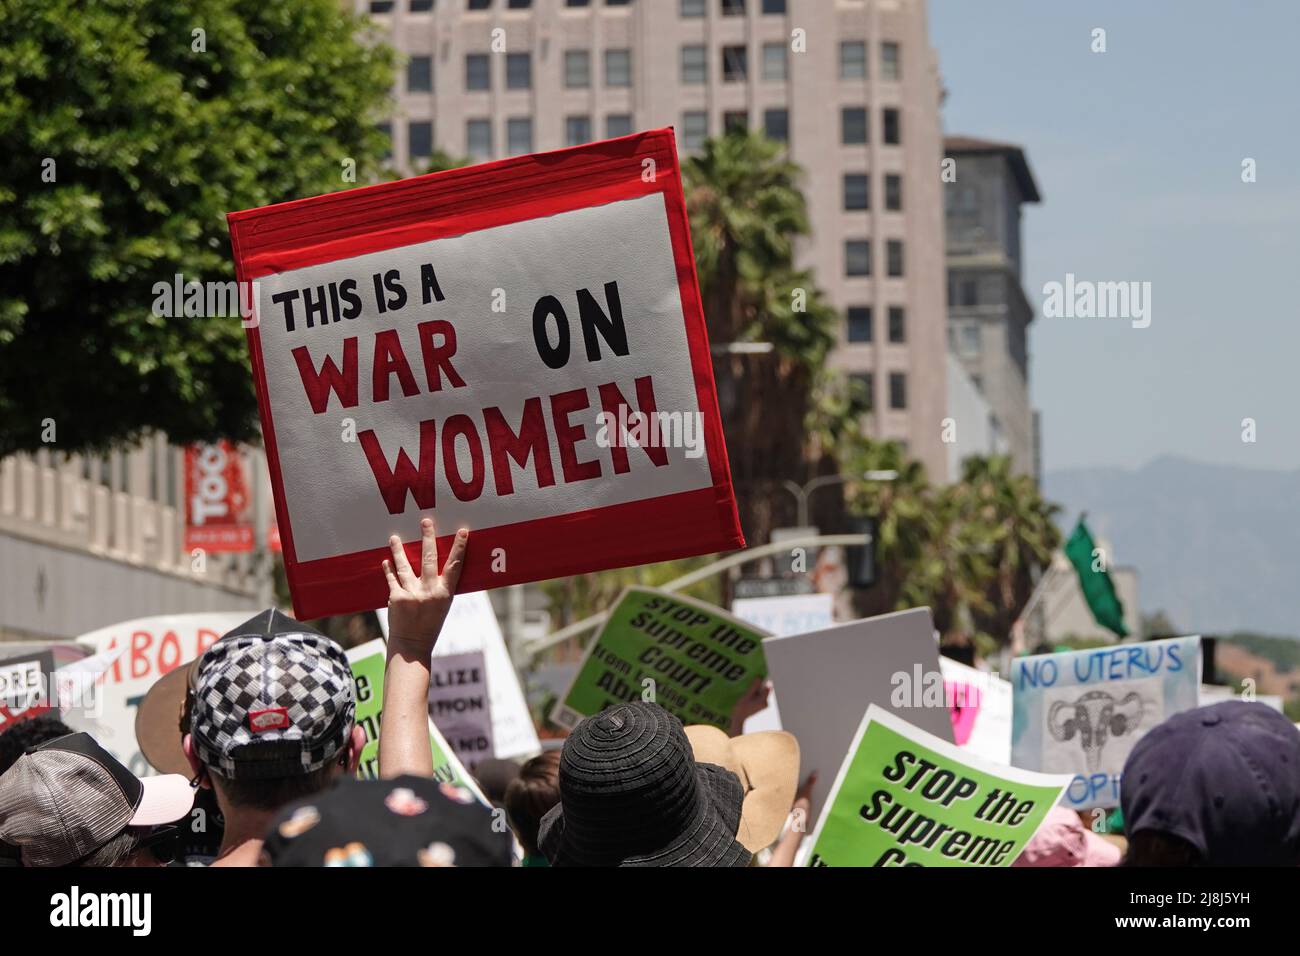 Los Ángeles, CA / EE.UU. - 14 de mayo de 2022: Durante la marcha del “Día de Acción” en L.A. se muestra un signo que dice “ESTA ES UNA GUERRA CONTRA LAS MUJERES” Foto de stock